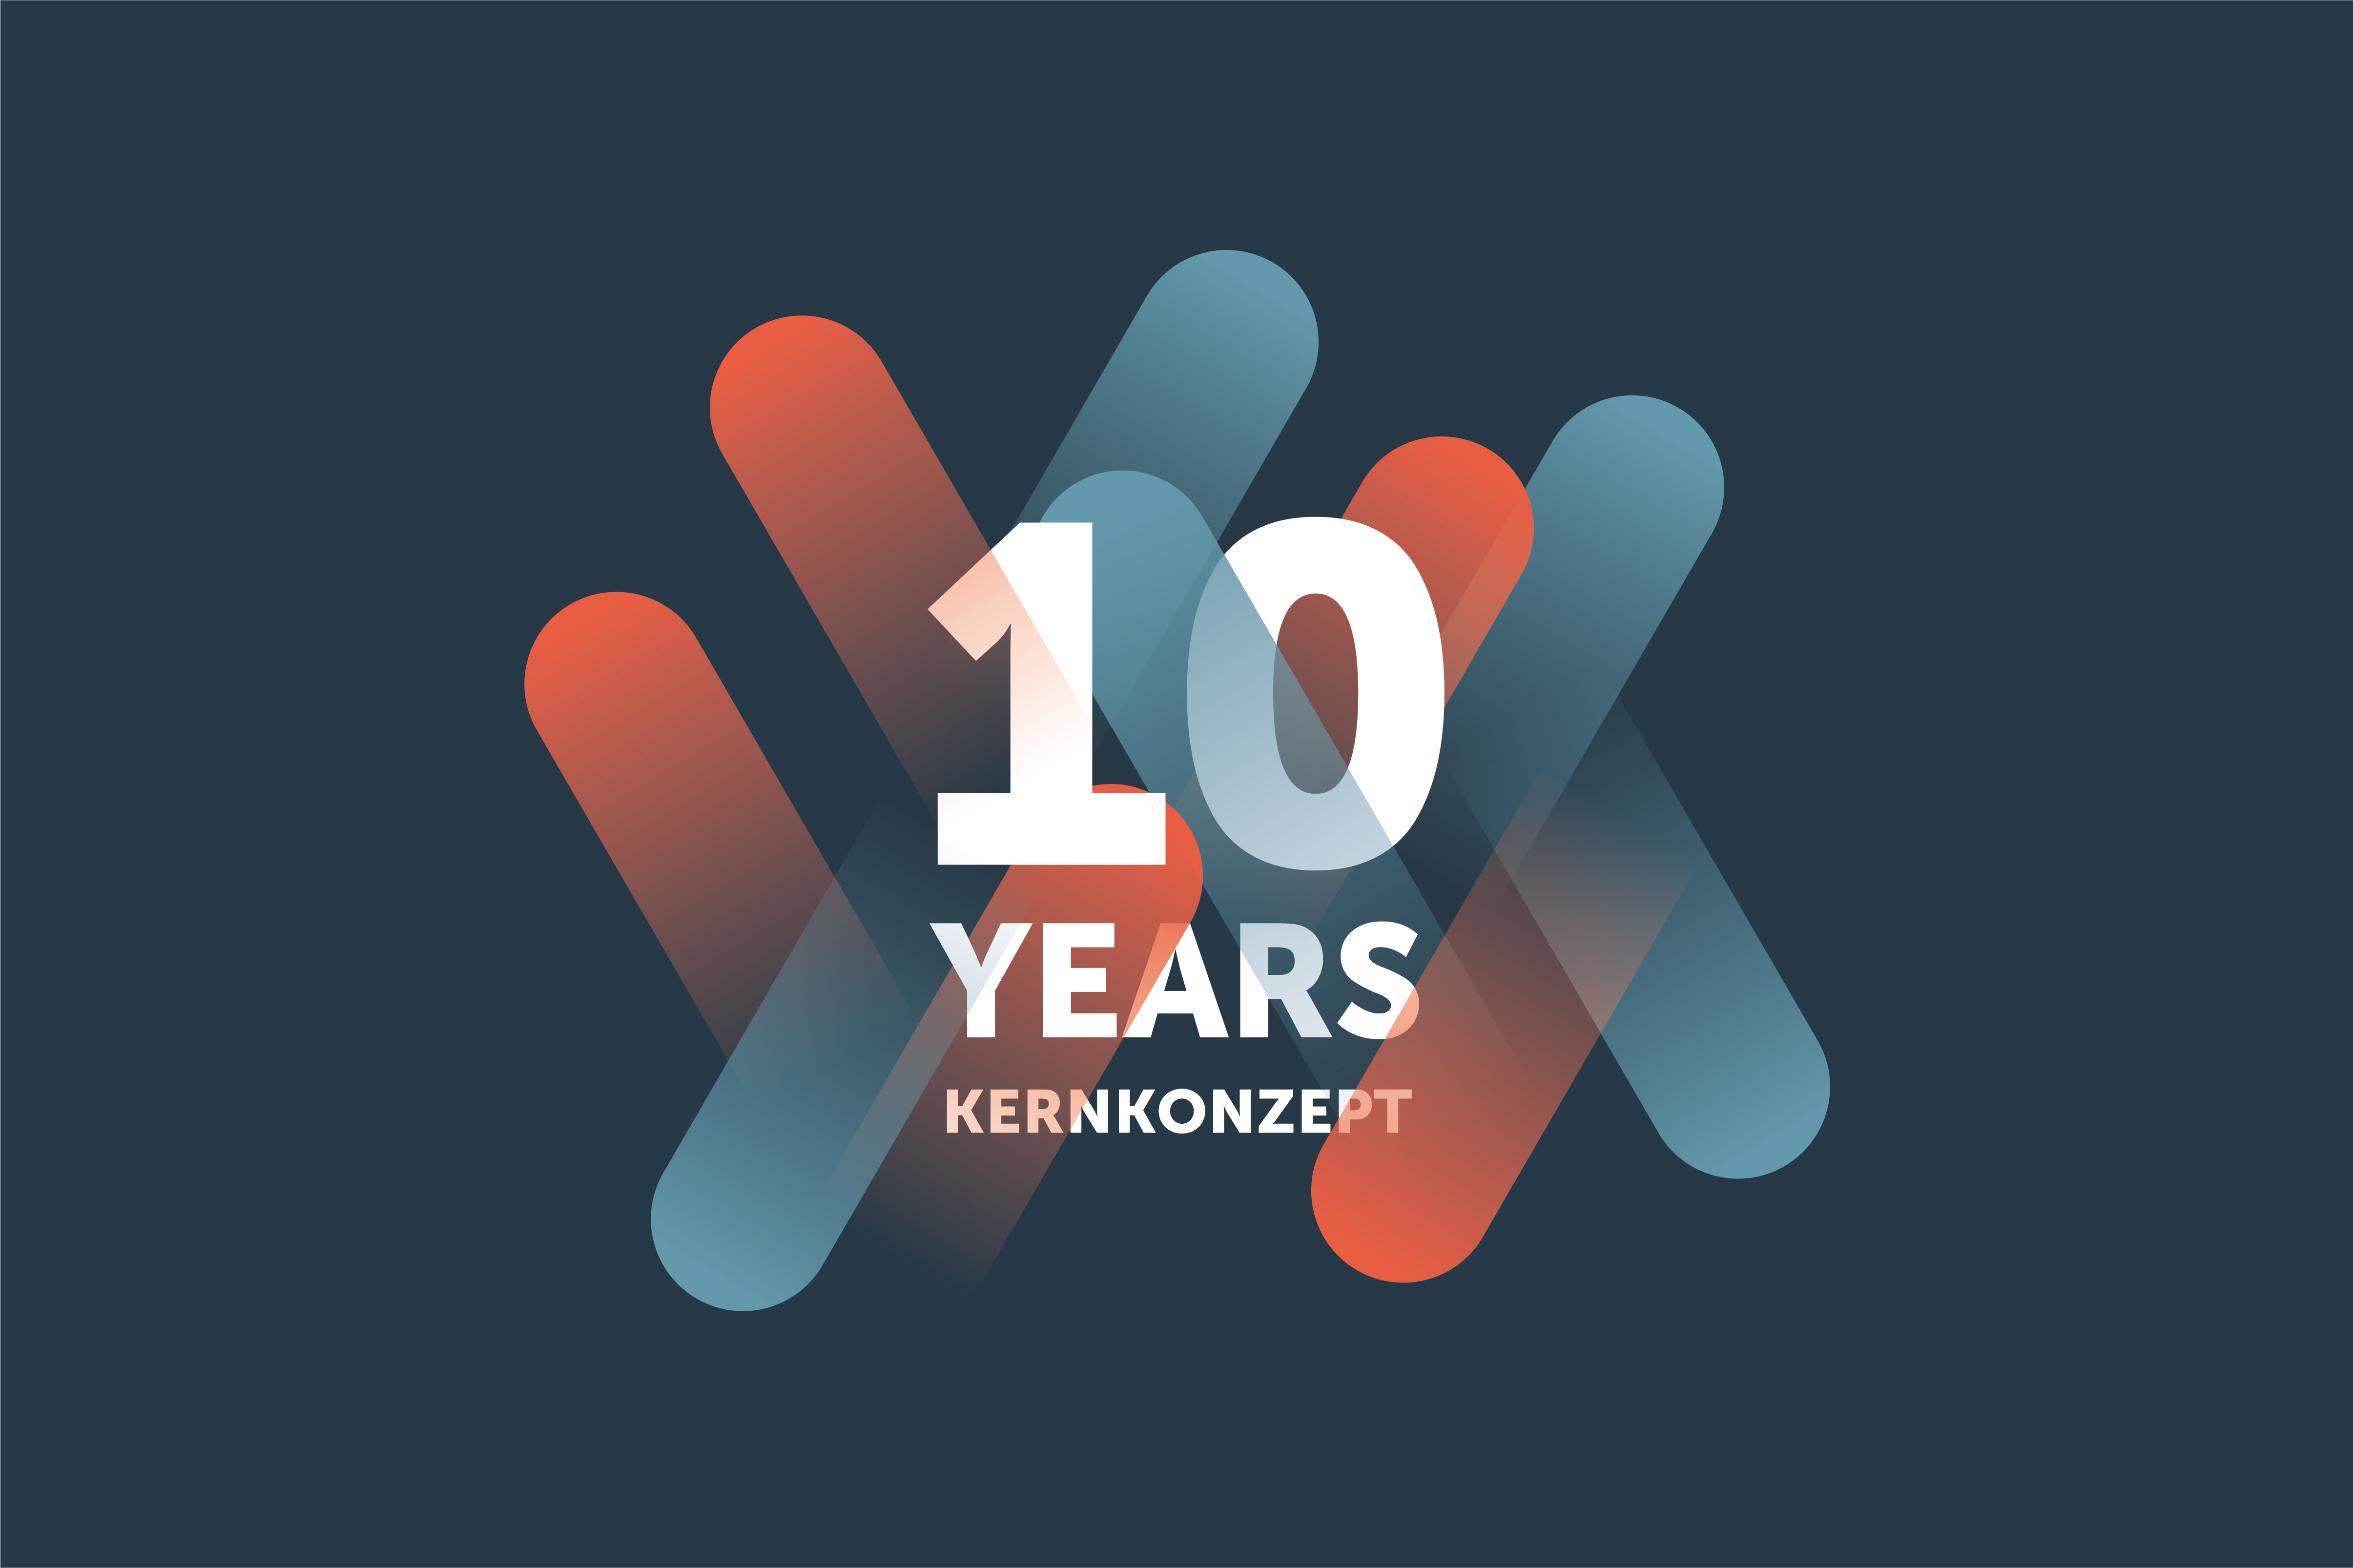 We are celebrating: 10 Years Kernkonzept!